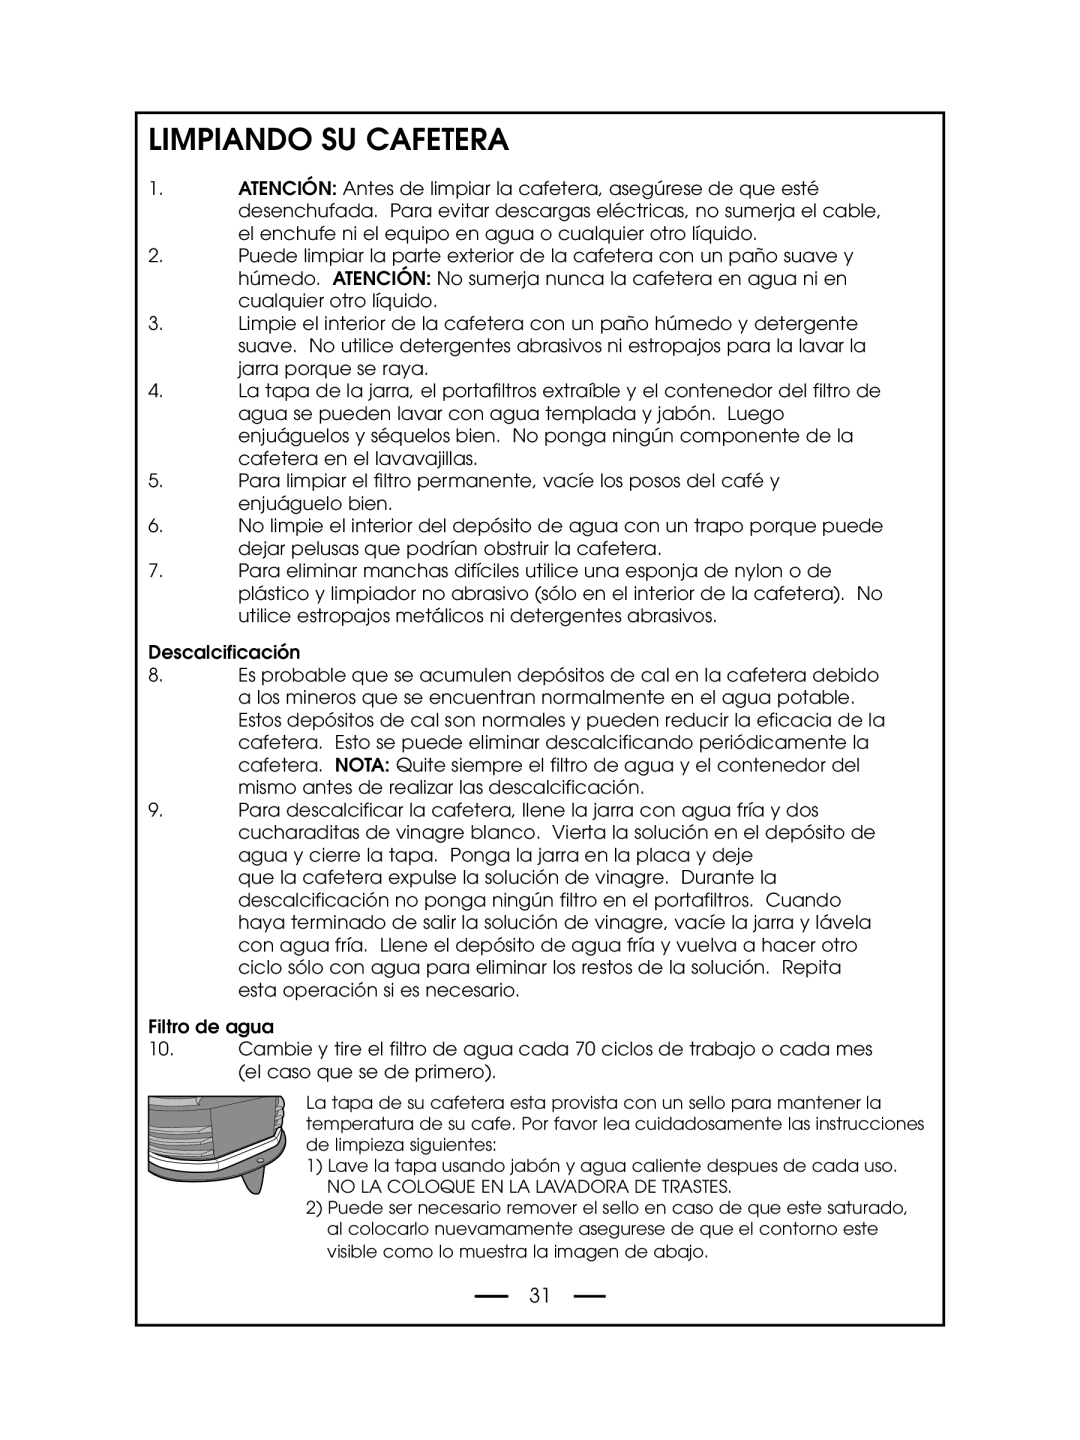 DeLonghi DCM485 instruction manual Limpiando Su Cafetera 